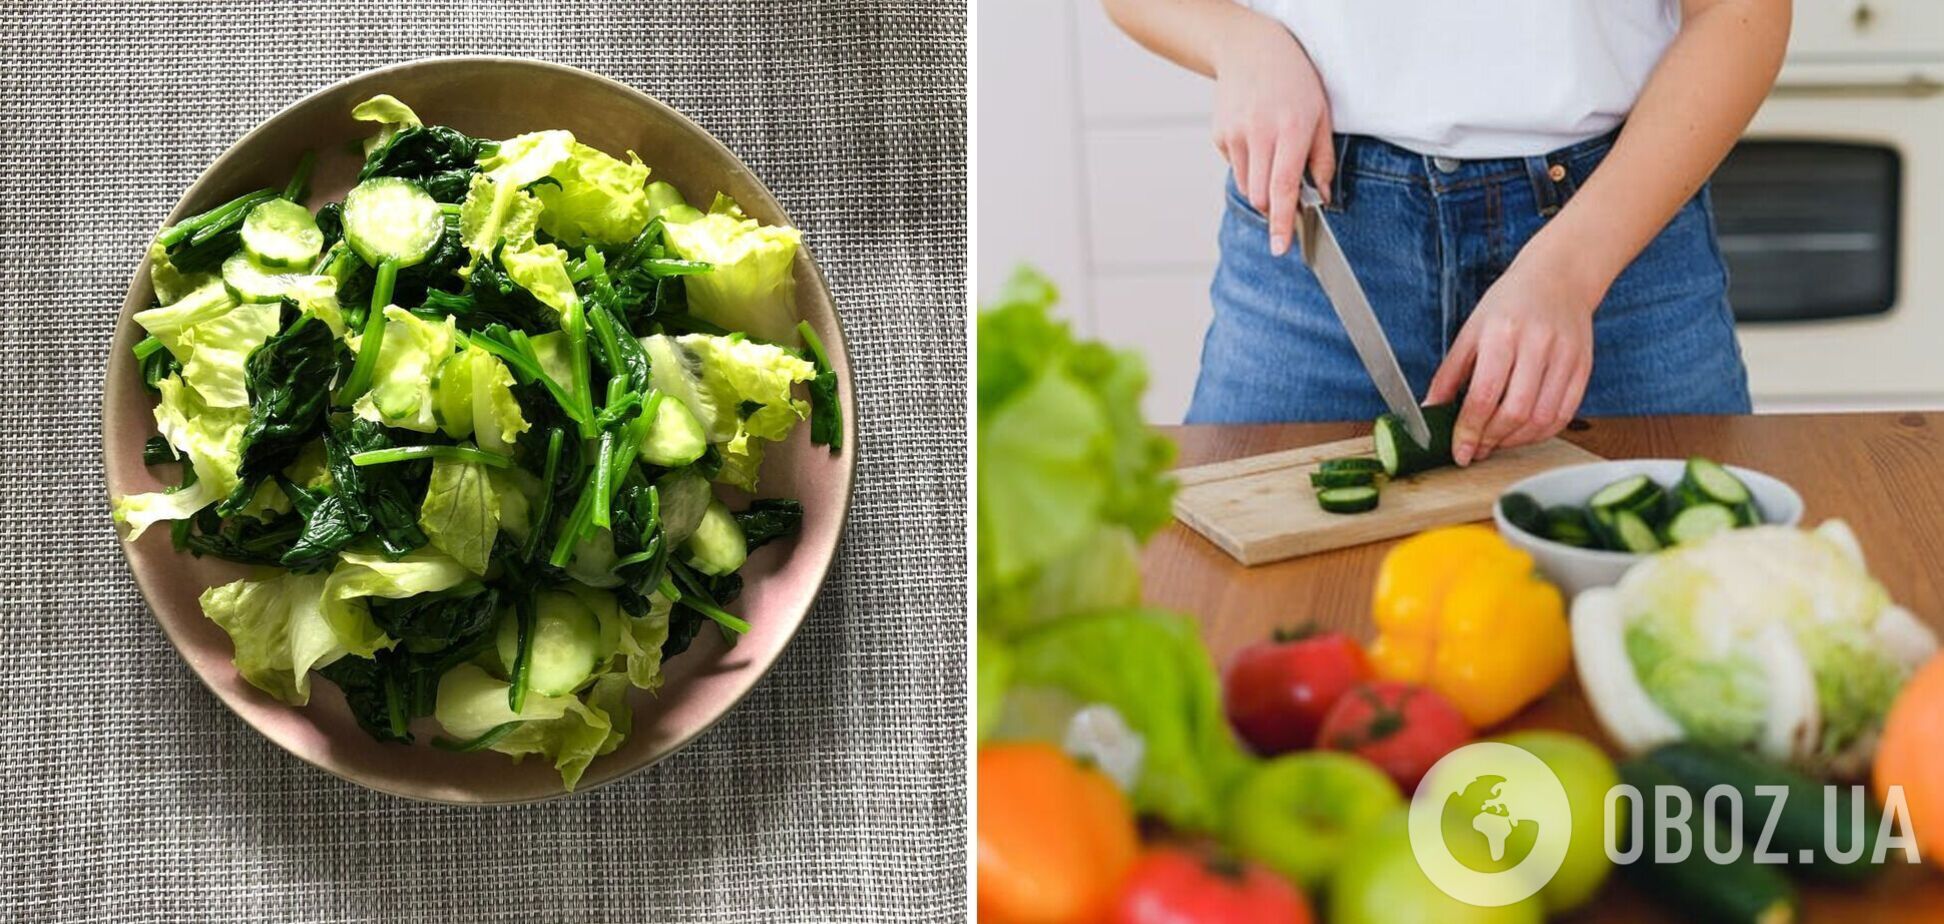 Вітамінний весняний салат: з чого приготувати просту страву